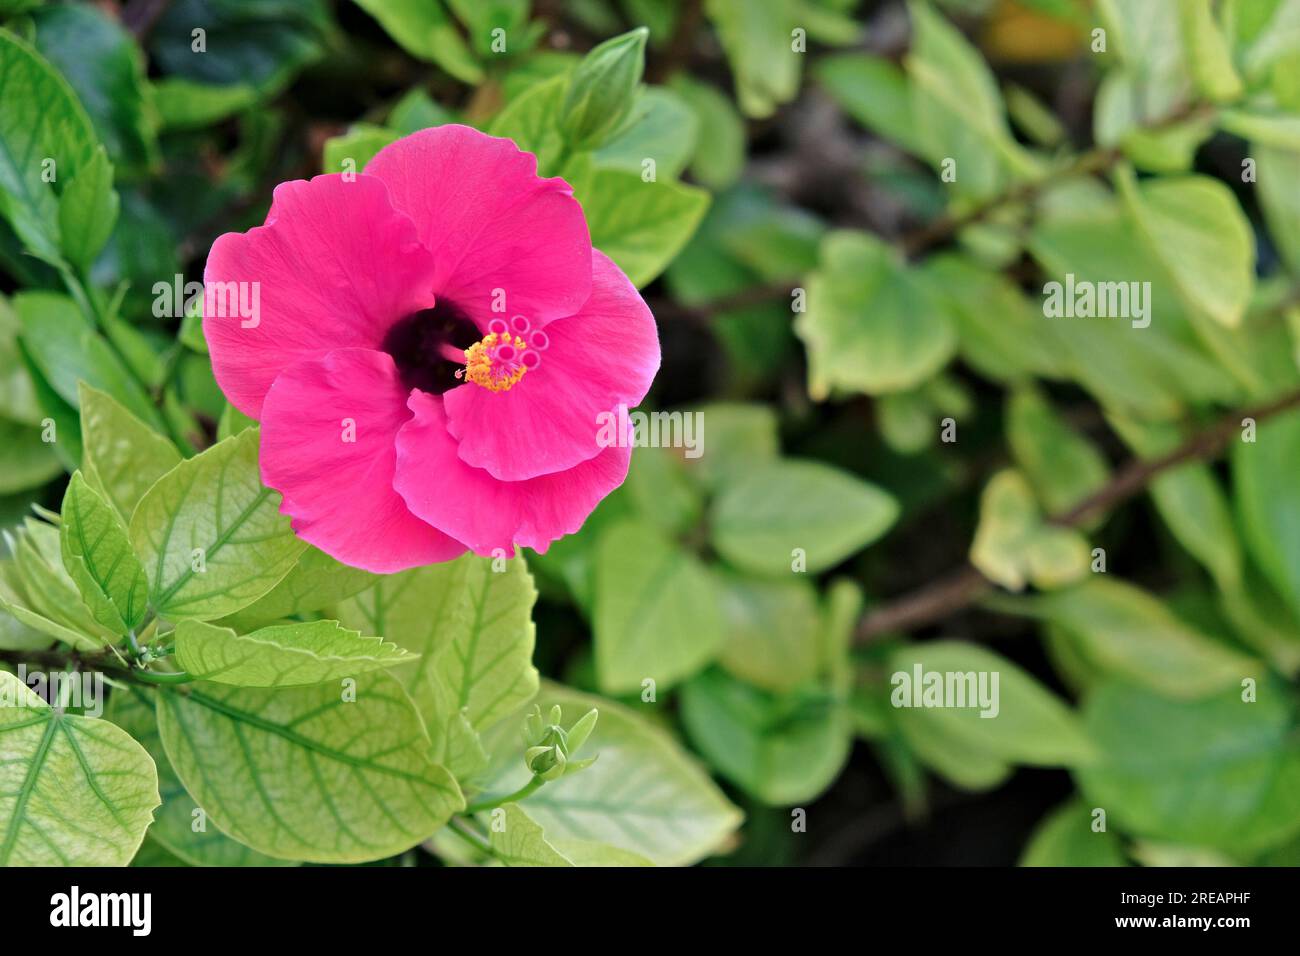 Eine pinkfarbene Hibiskusblume mit Blumenhintergrund und Platz für Text. Stichwörter & Kategorien Stichwörter 1, eins, Blume, fünf Blütenblätter, Hibiskus, Hell Stockfoto